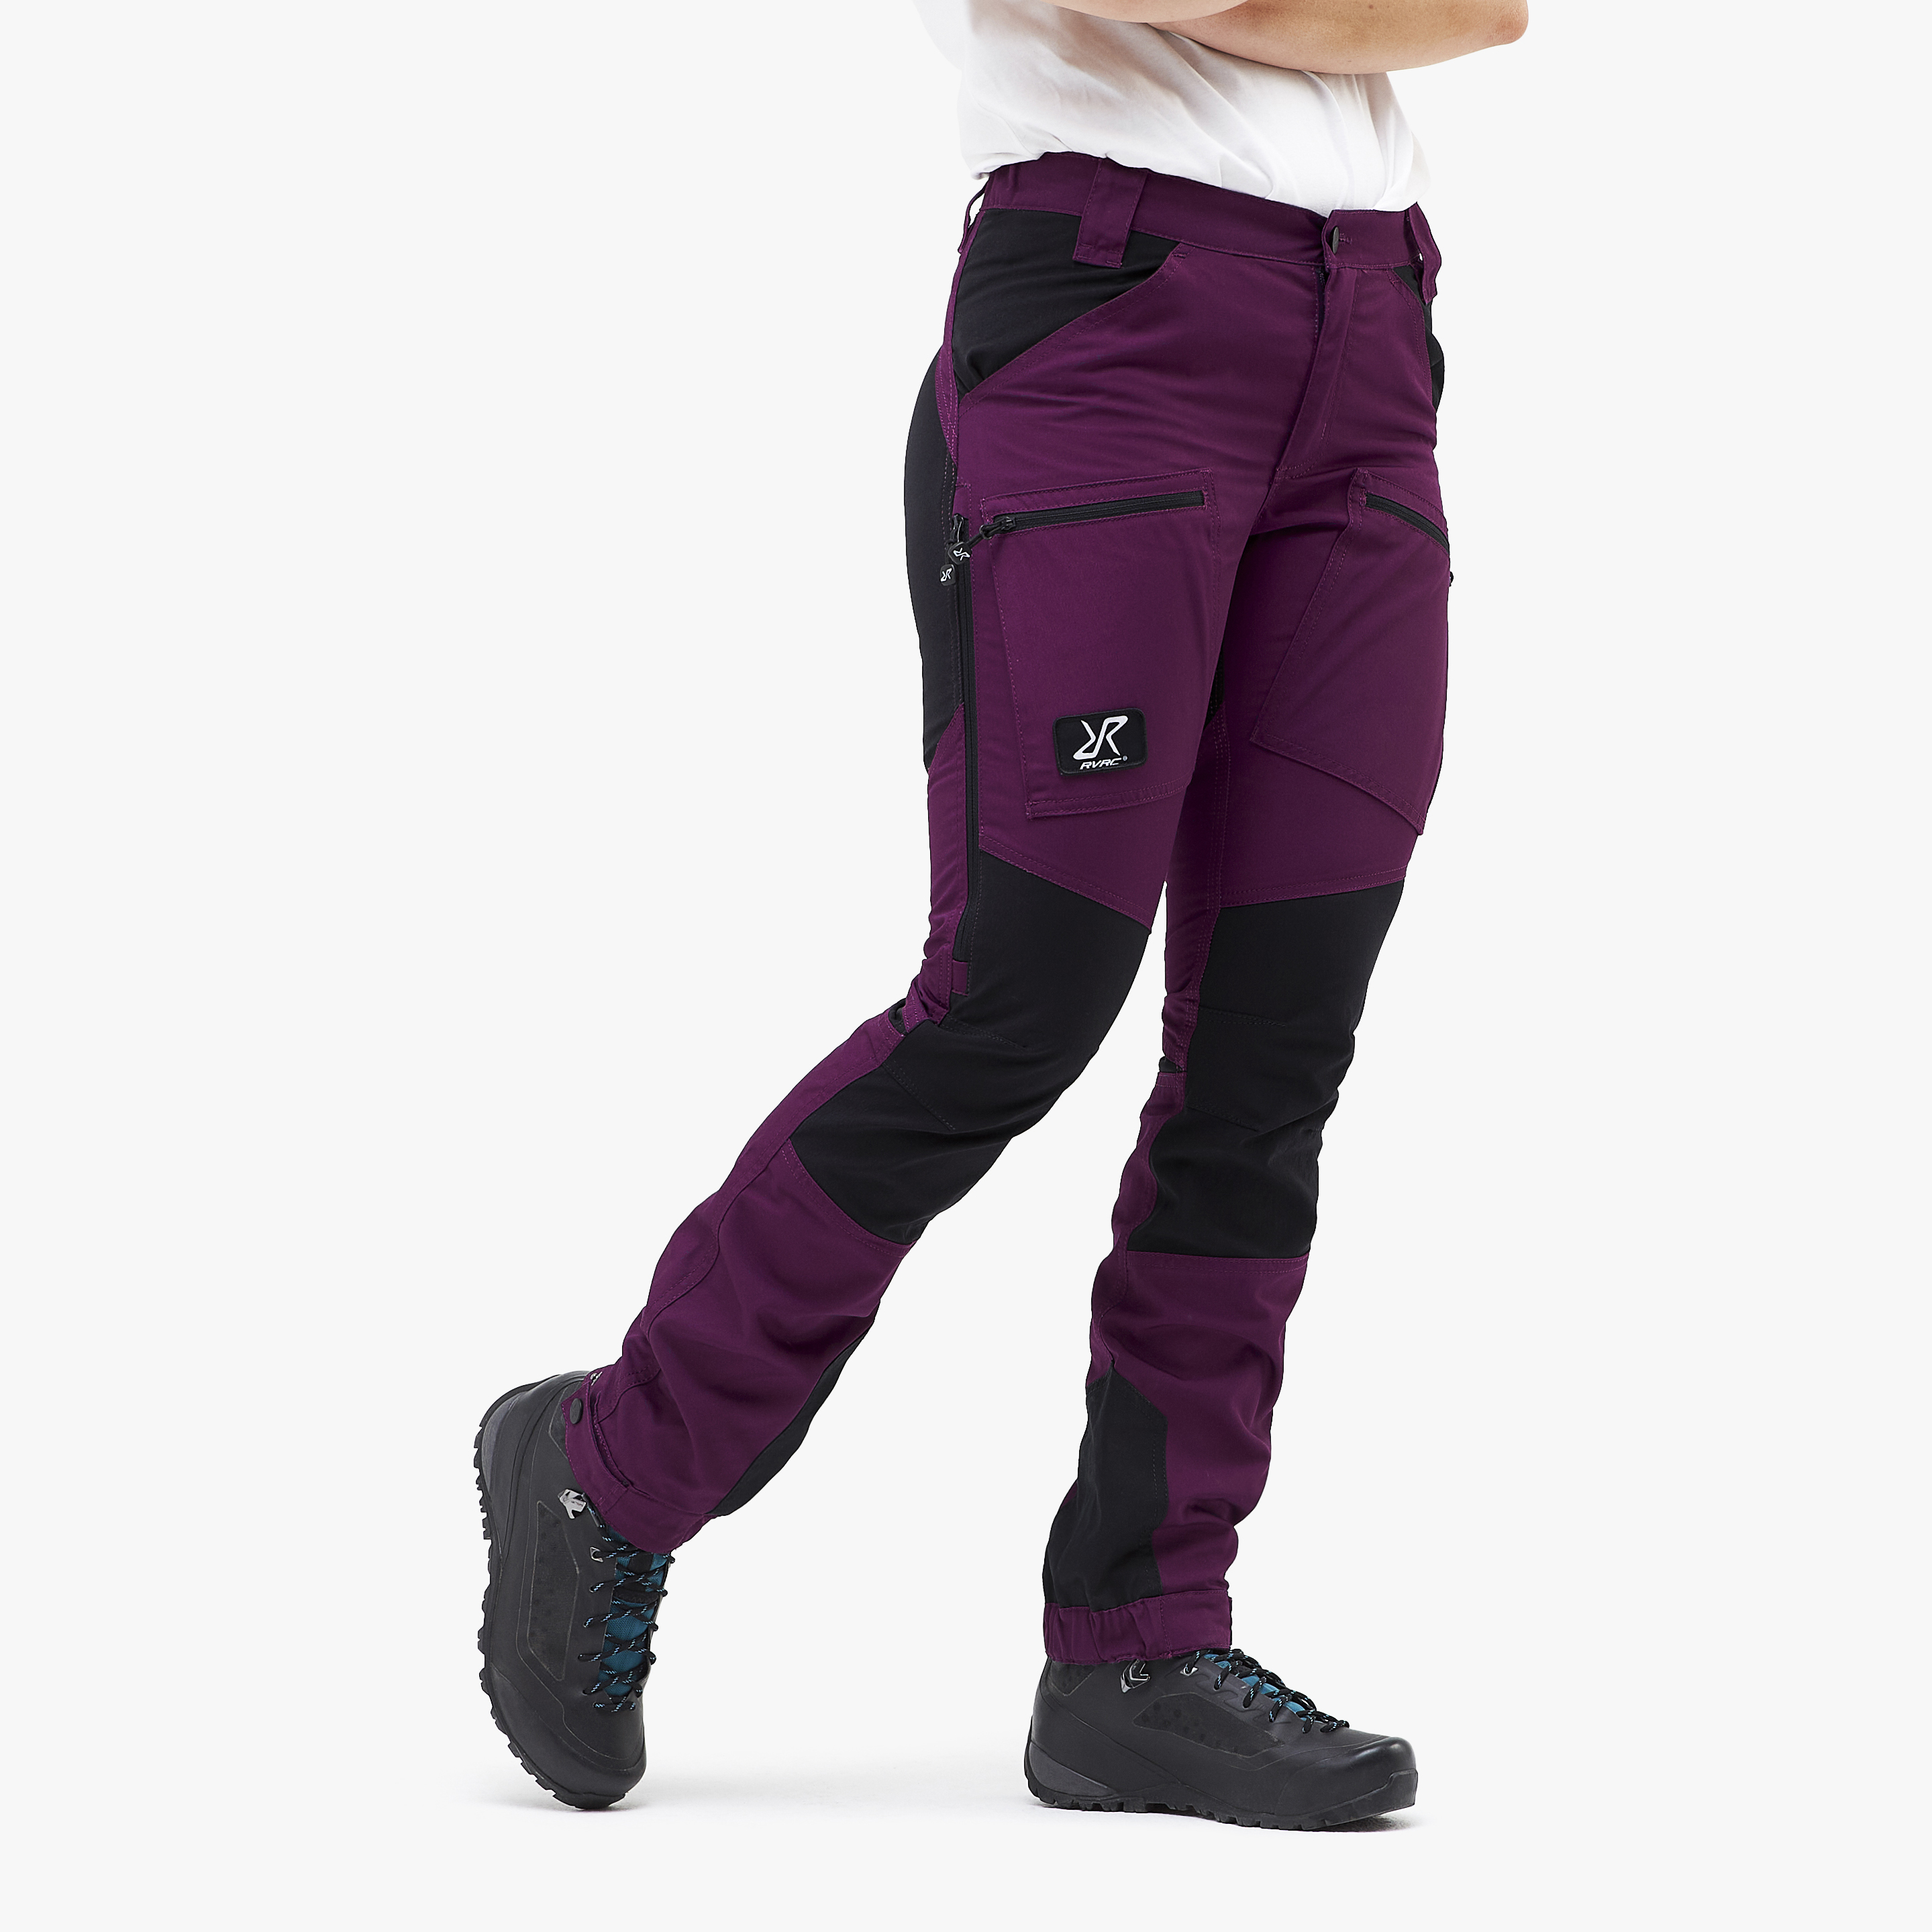 Nordwand Pro Short Pants Purple Rain Women